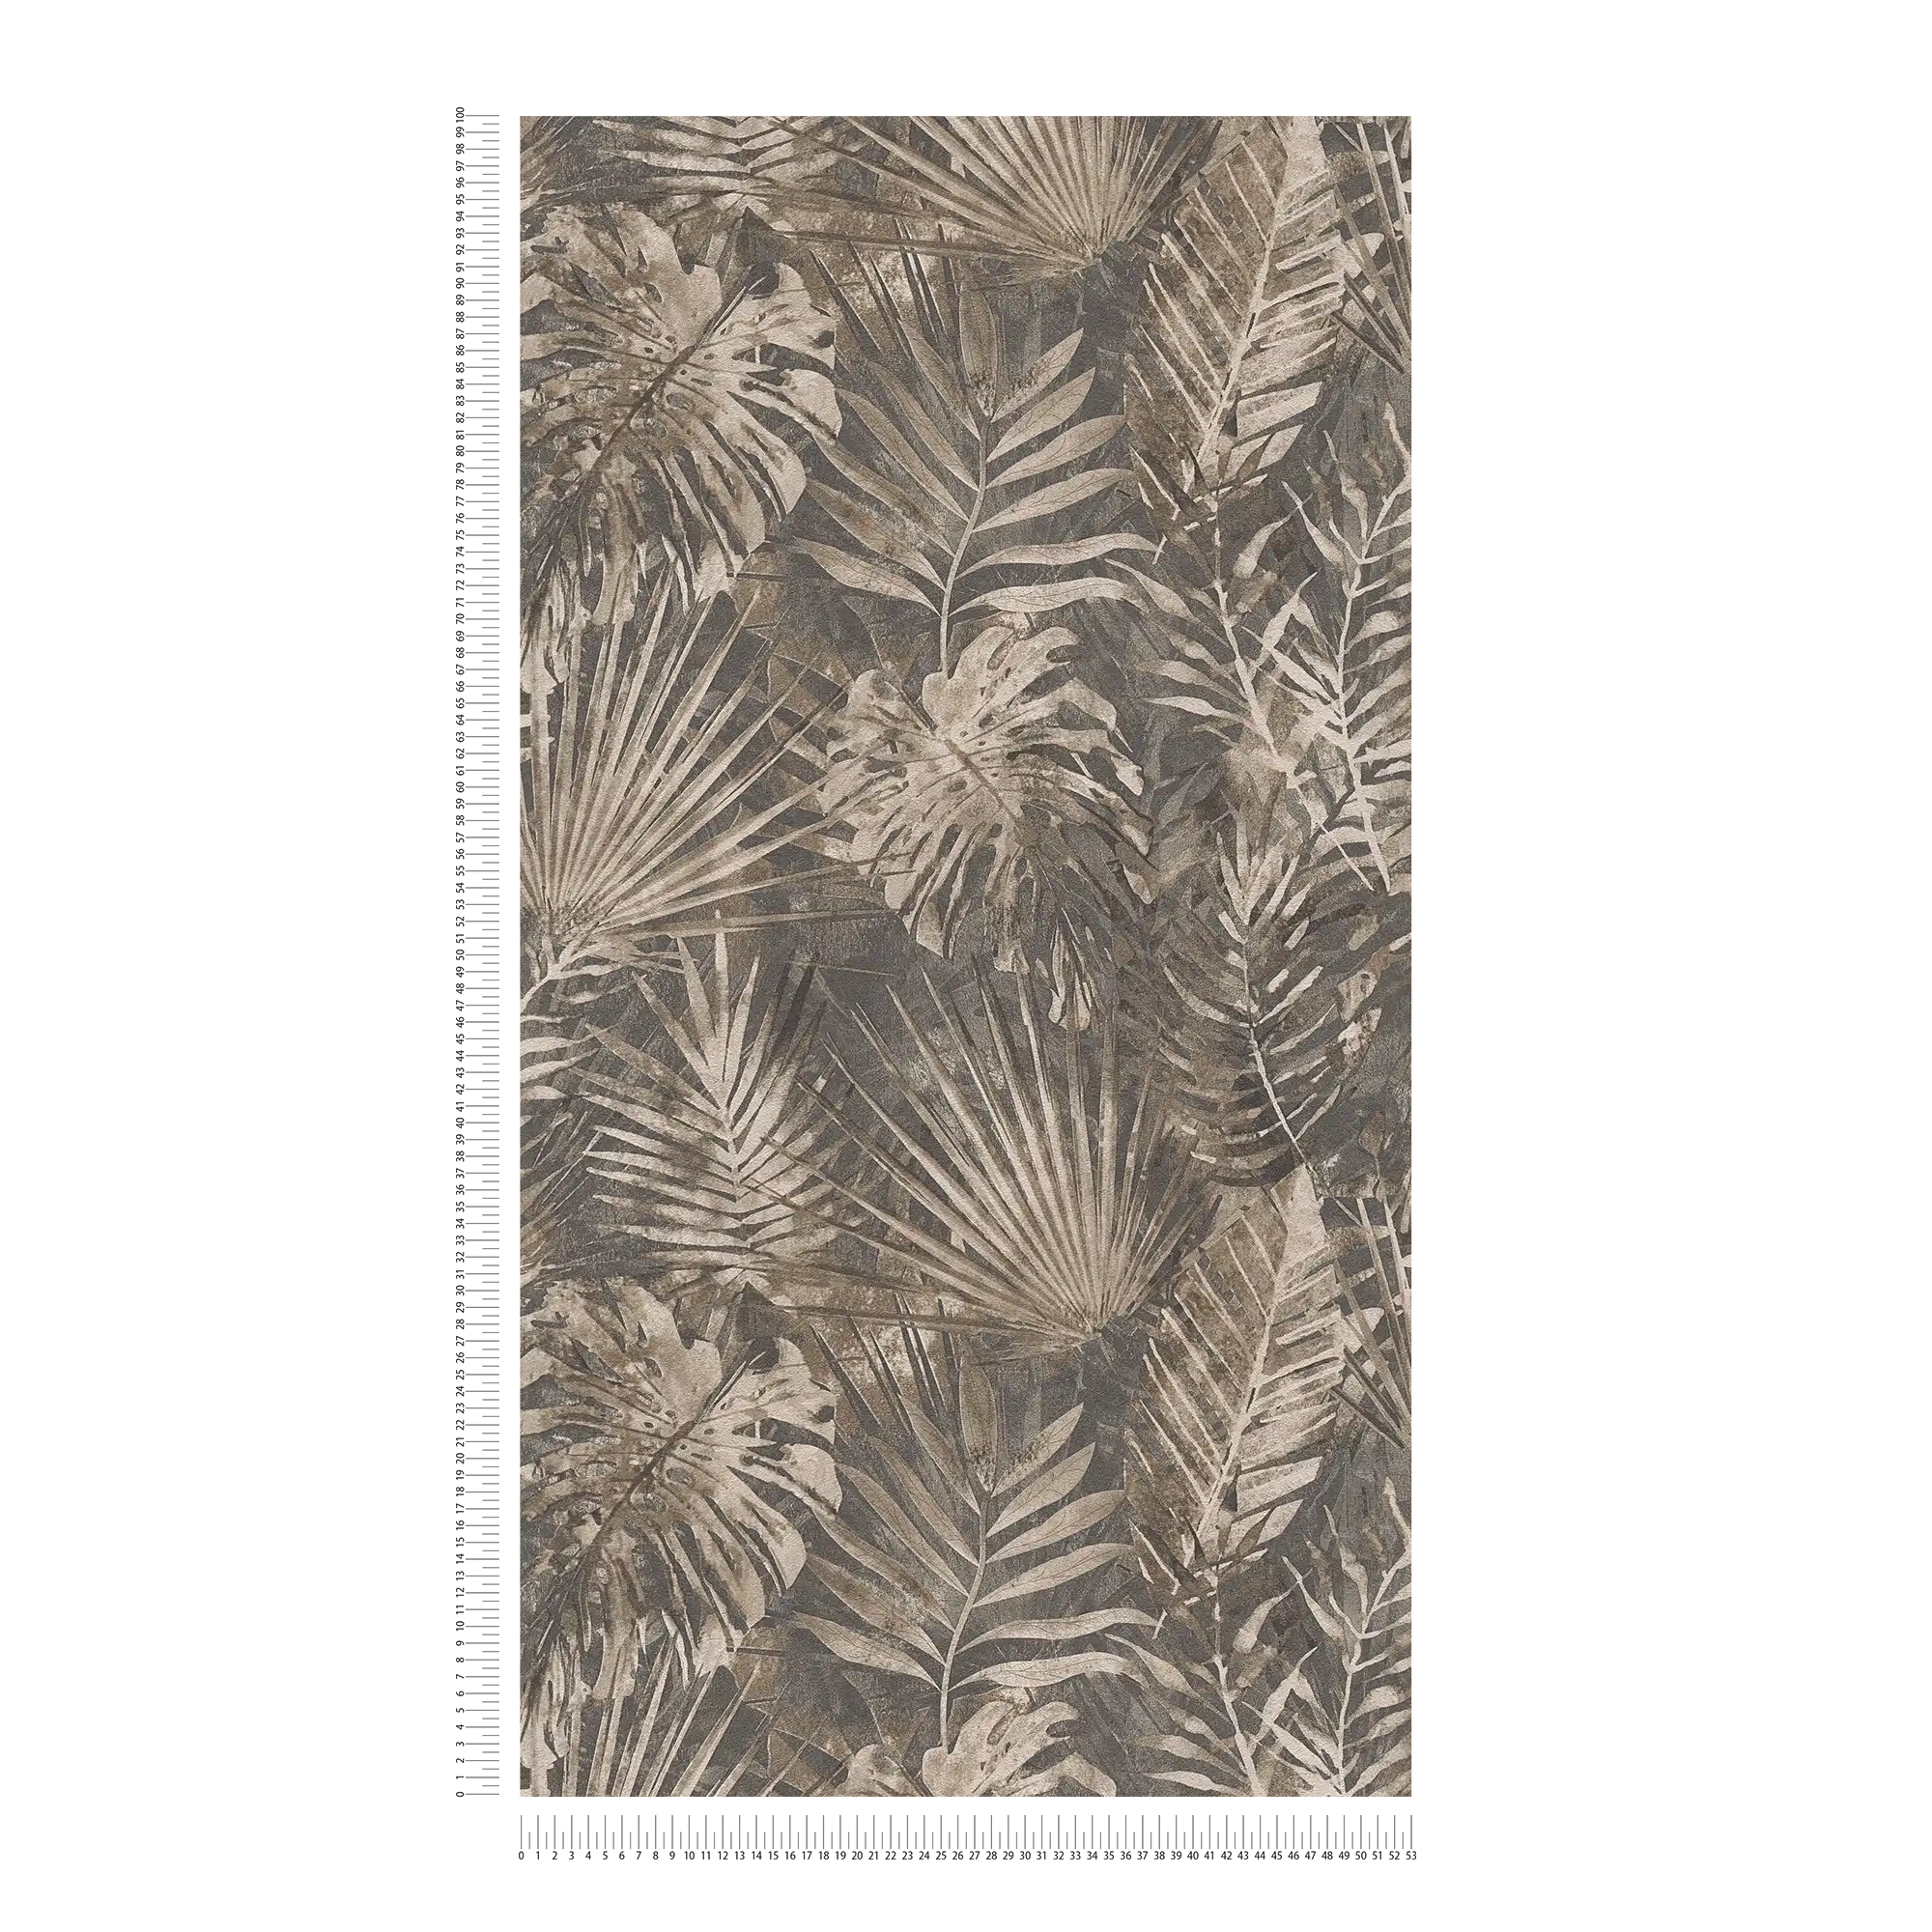             Jungle behang met tropisch bladmotief PVC-vrij - bruin, beige, antraciet
        